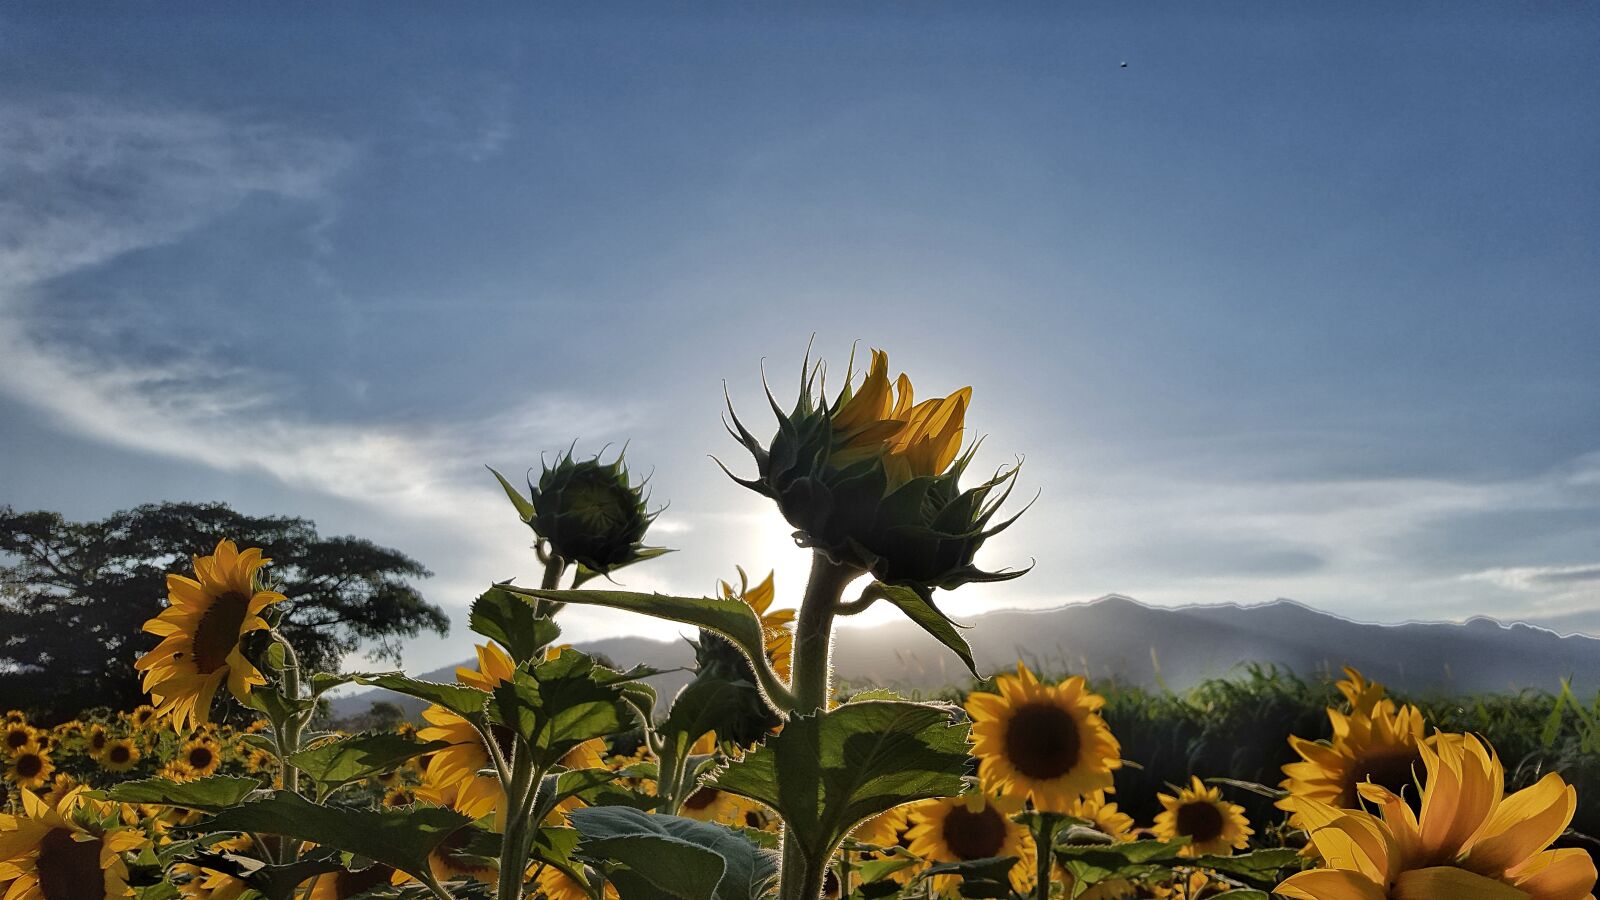 Samsung Galaxy S6 sample photo. Field, honduras, sun, sunflower photography